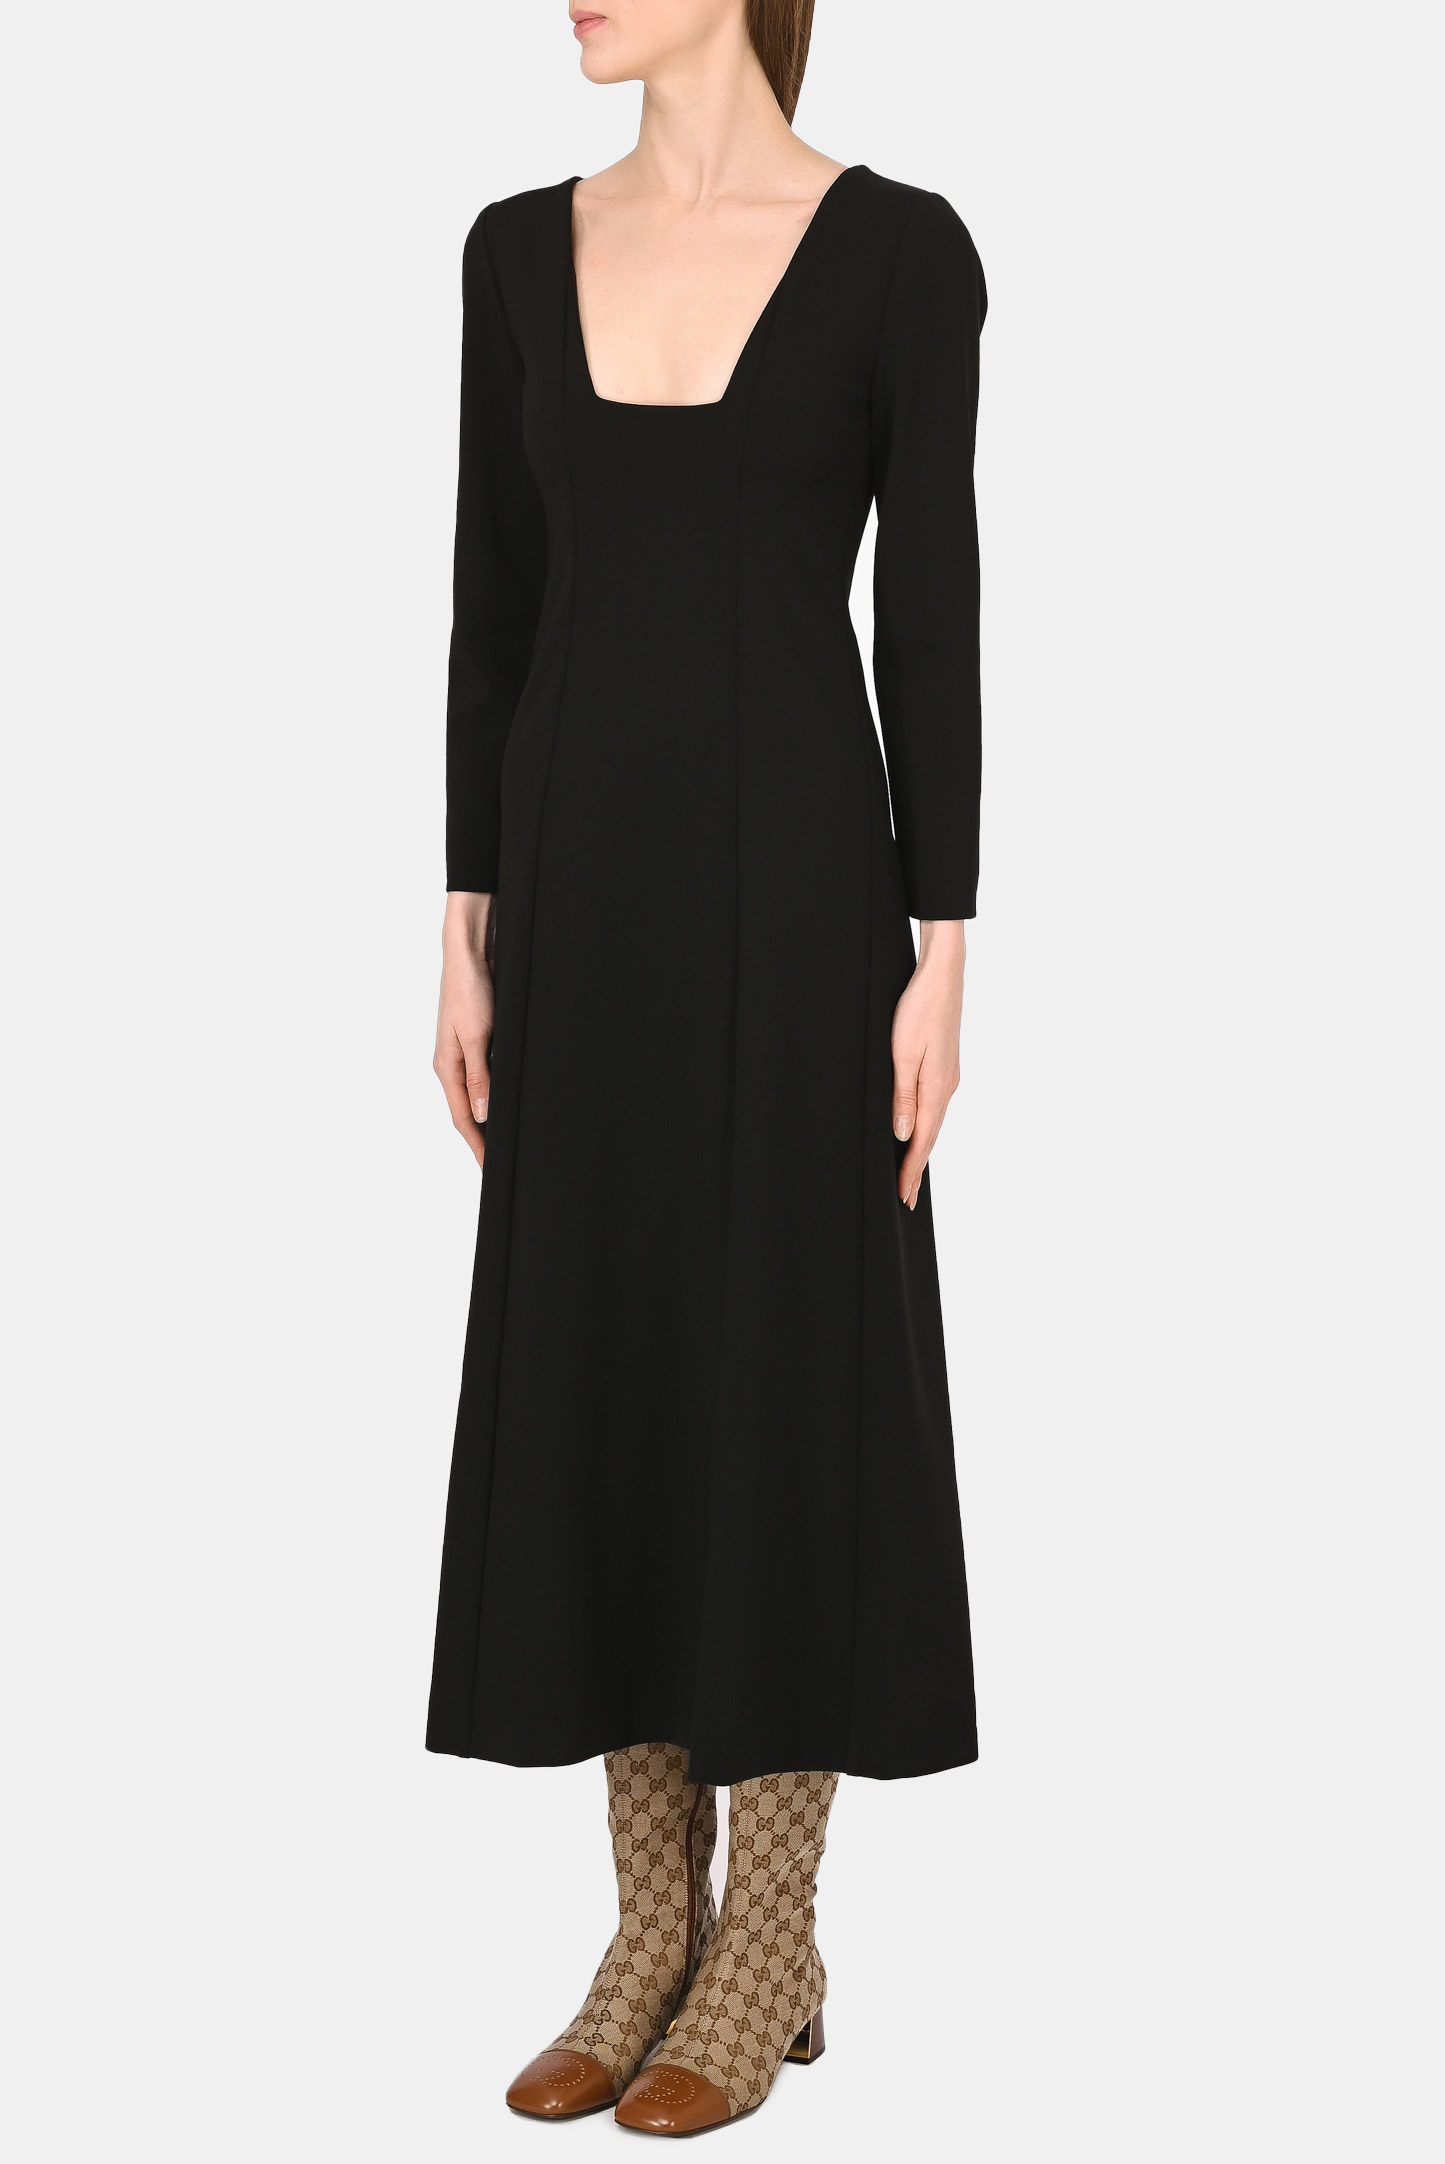 Платье GUCCI 666250 X7C07, цвет: Черный, Женский